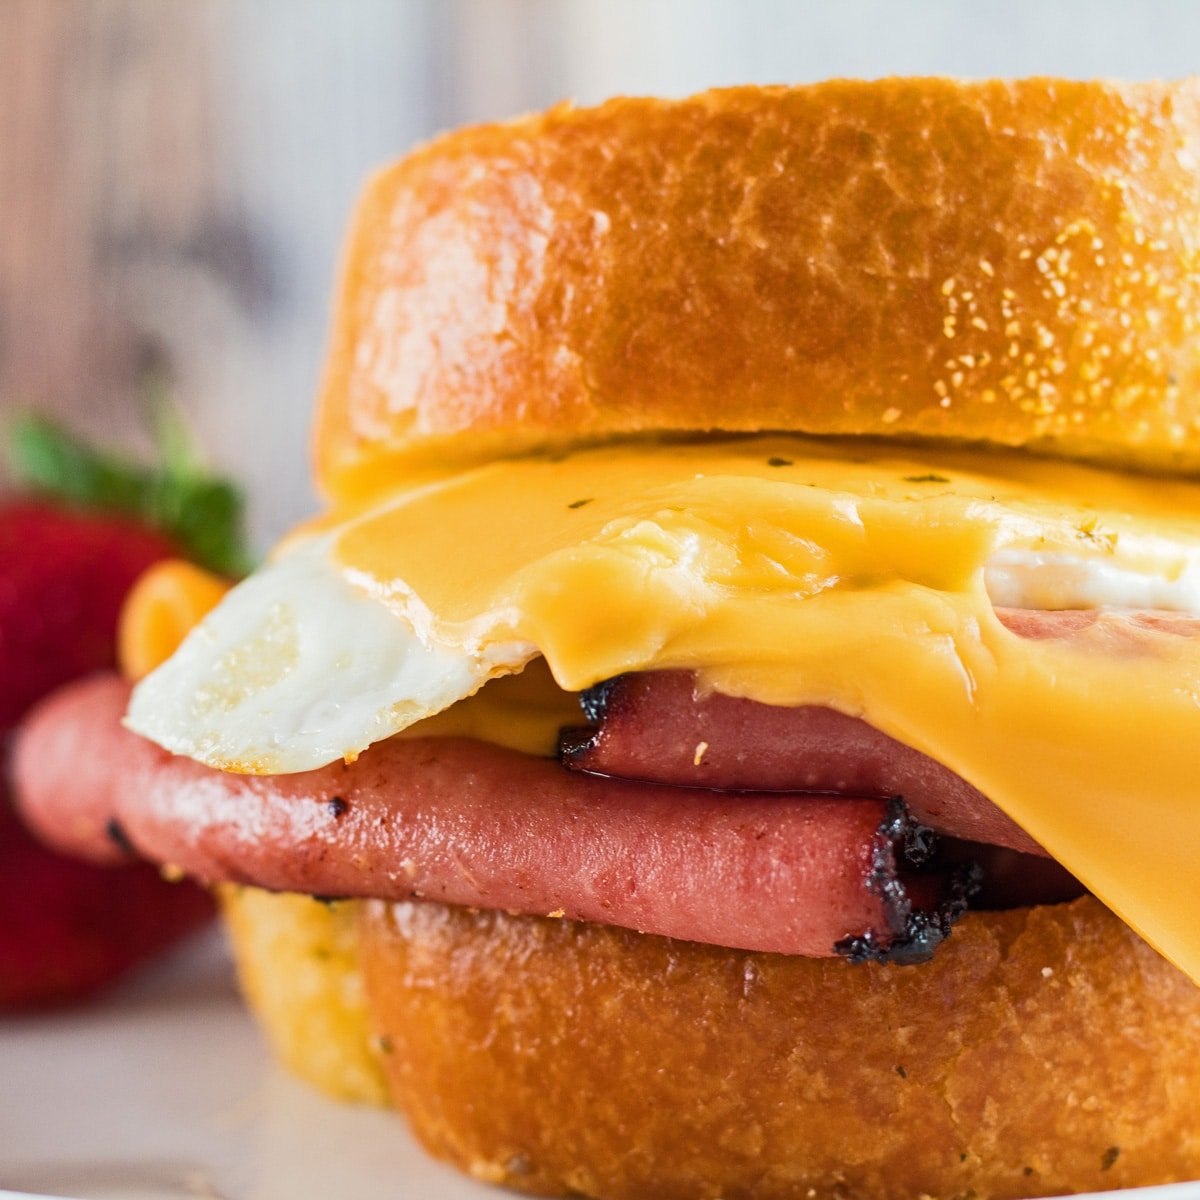 Slika izbliza slika pržene bolonje i sendviča s jajima.